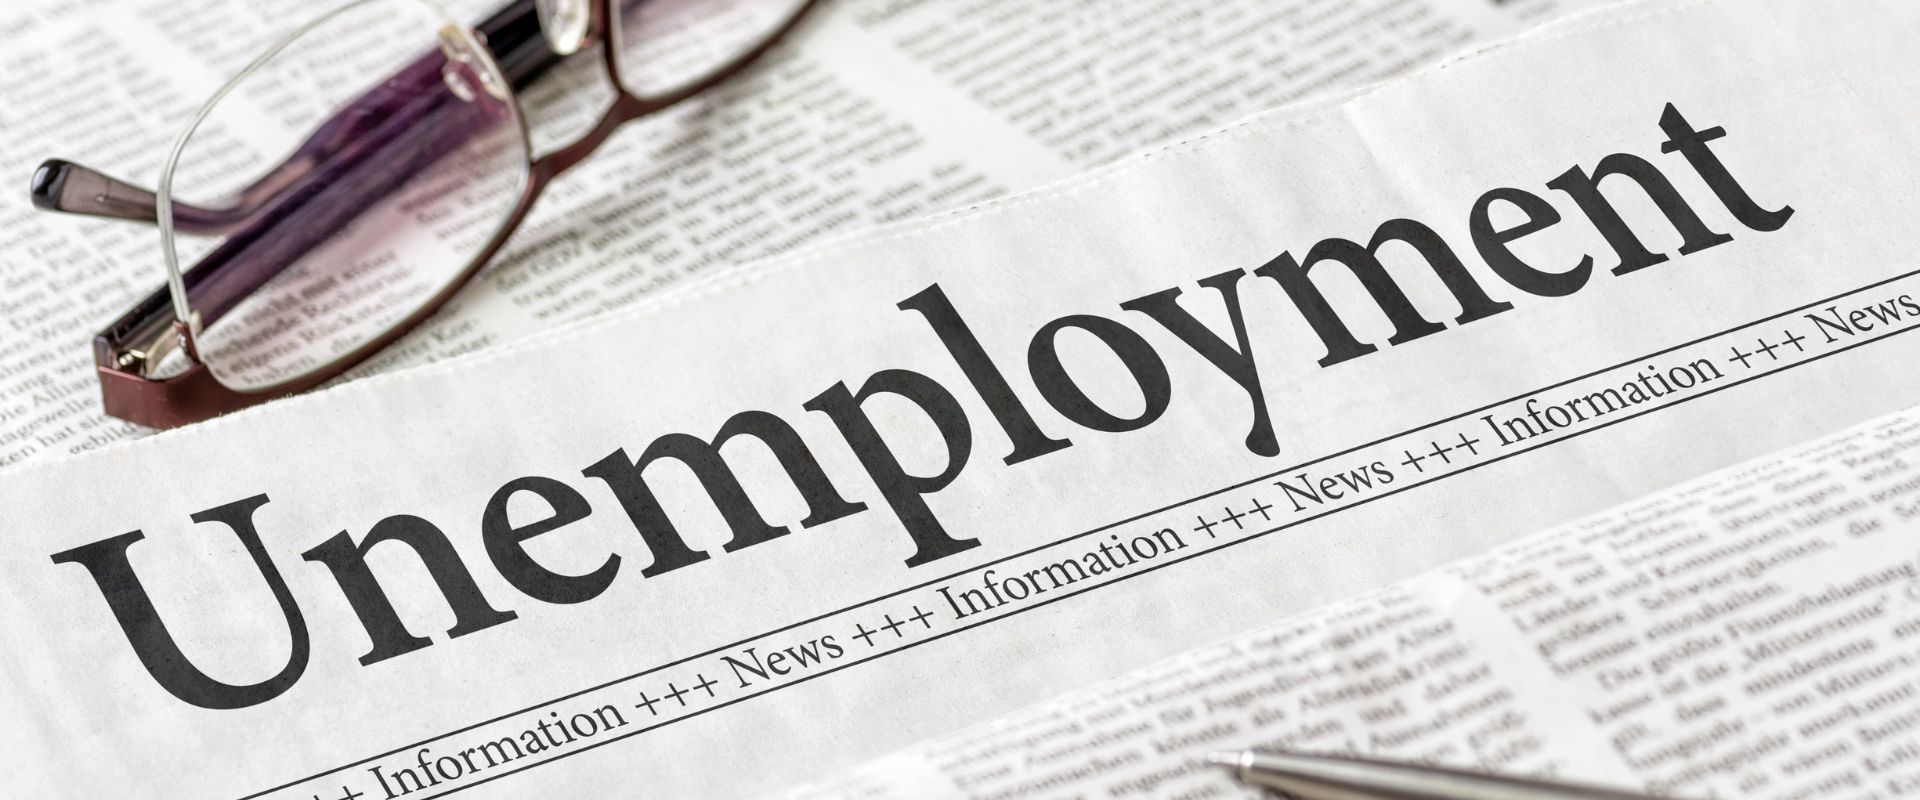 Unemployment newspaper headline